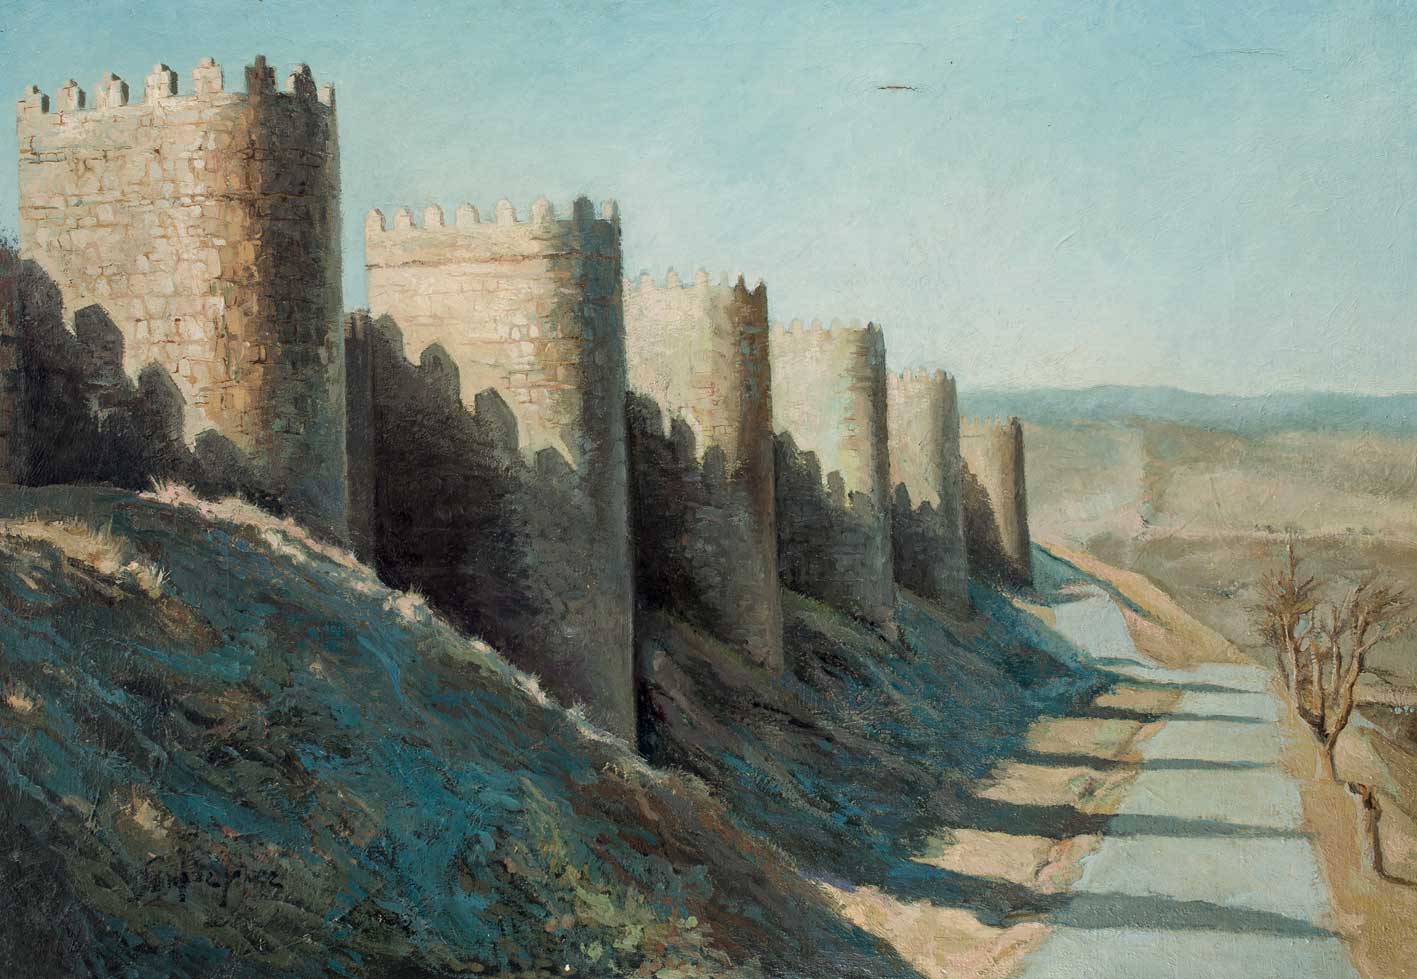 *SANCHEZ LÓPEZ. "Murallas de Ávila". Óleo sobre lienzo. 116 x 80 cm. Firmado en el ángulo inferior